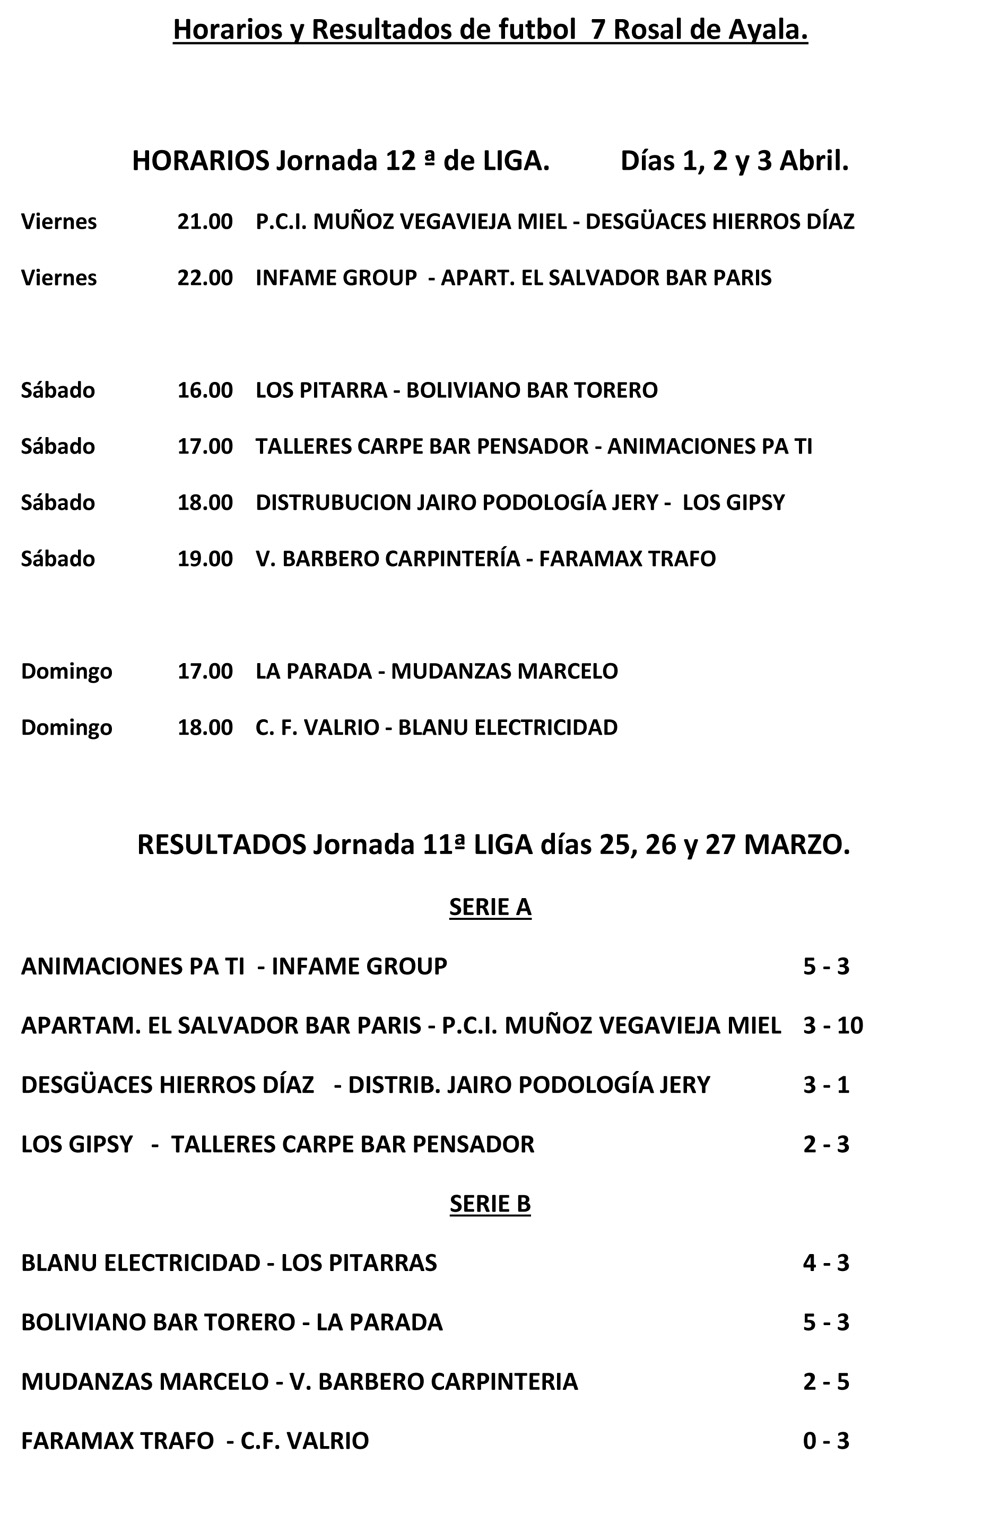 Resultados y horarios Fútbol-7 Rosal Ayala 2021/2022. 12ª Jornada Liga (1, 2 y 3 de abril) - Estadio Norte